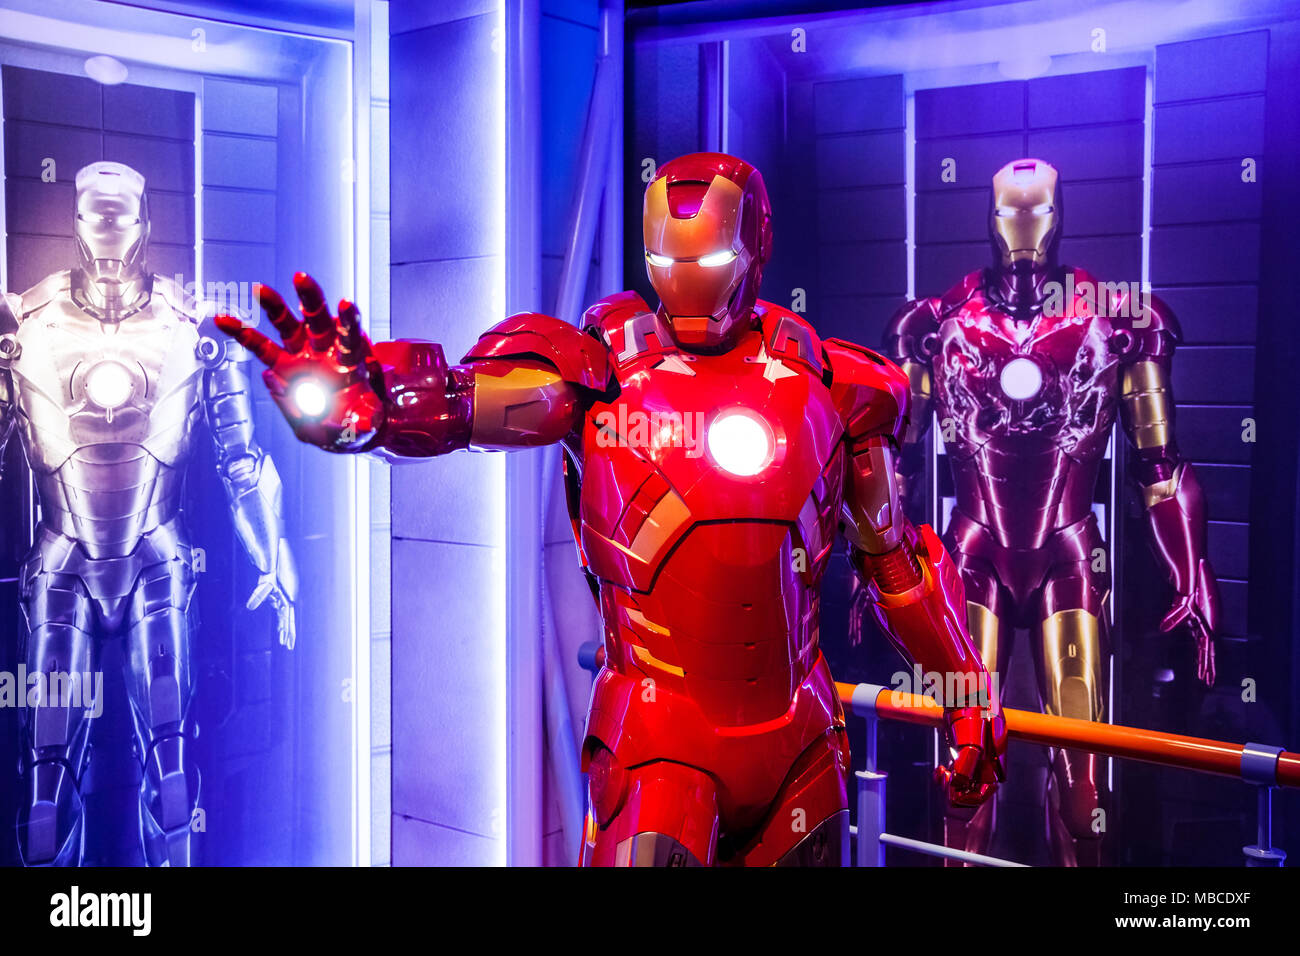 Wachsfigur von Tony Stark der Iron Man von Marvel Comics in Madame Tussauds Wax Museum in Amsterdam, Niederlande Stockfoto